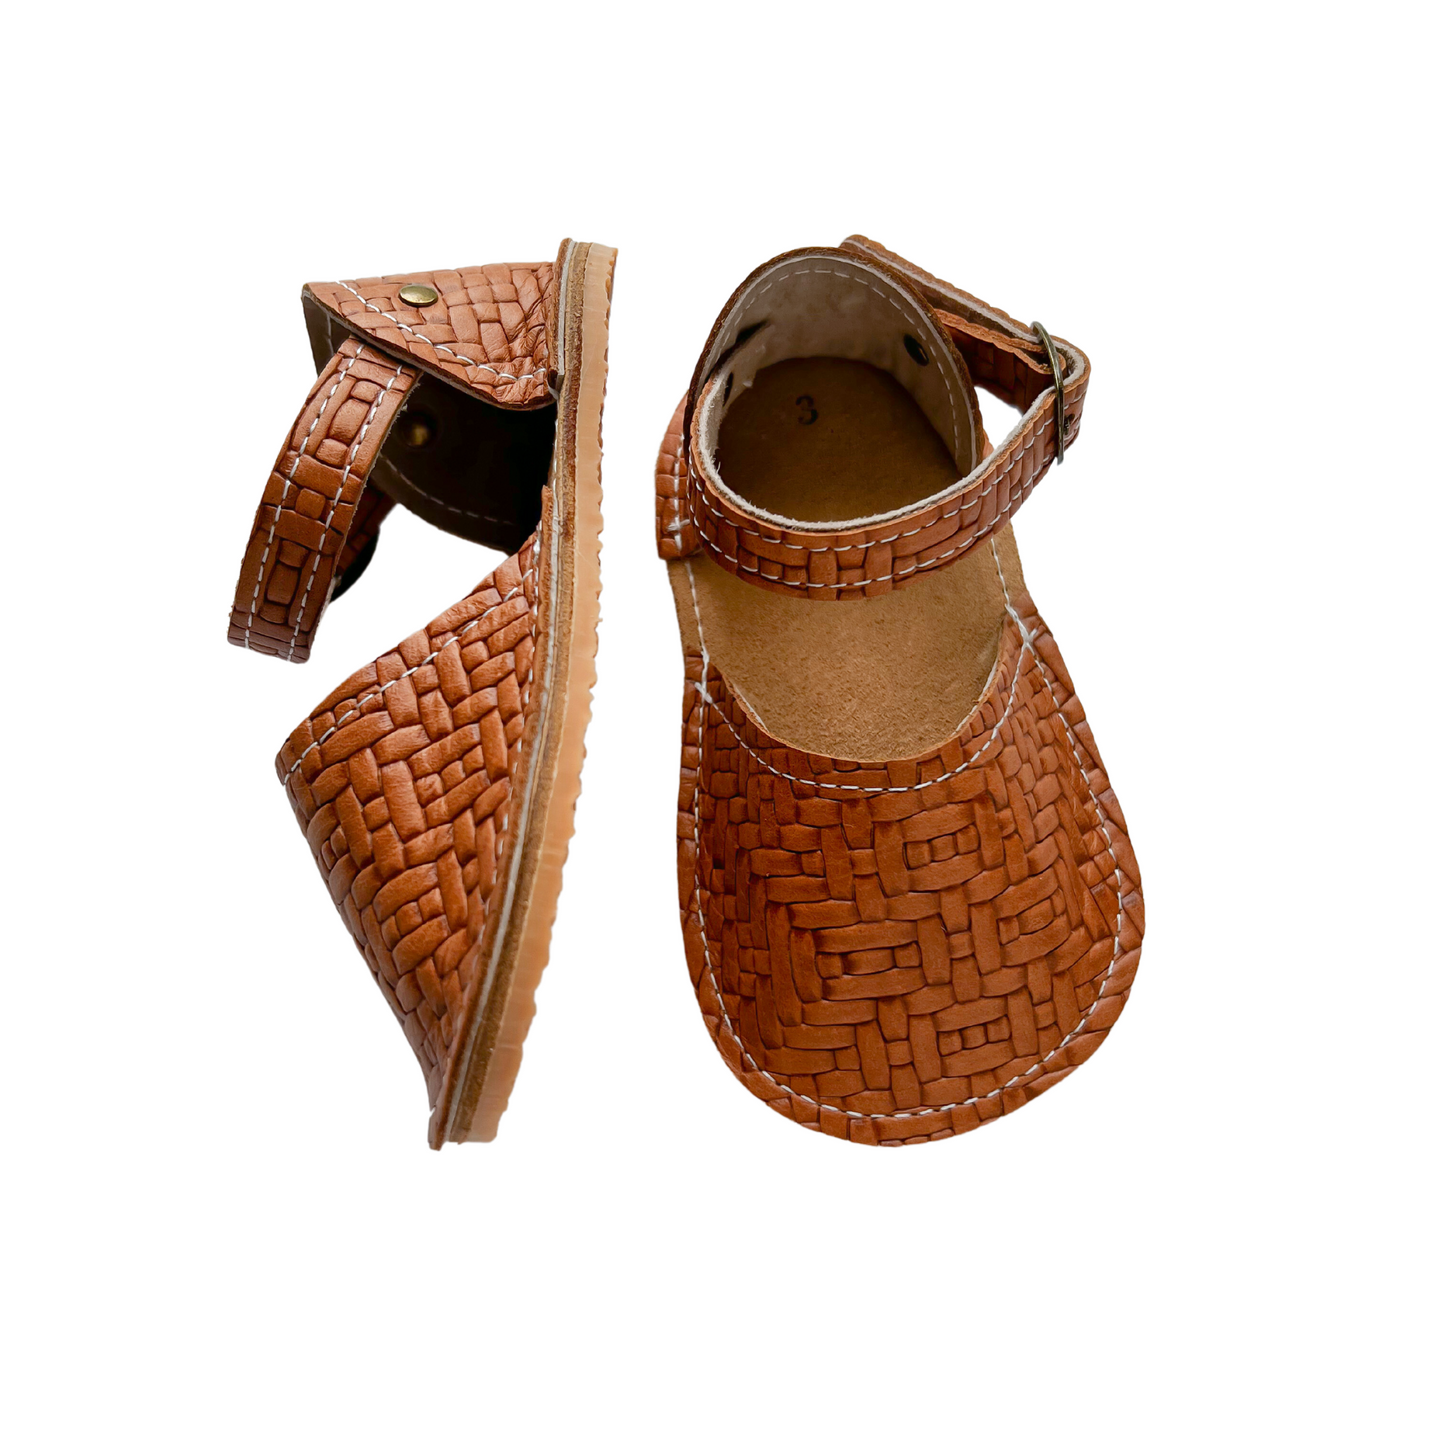 Little Explorer Sandals - Saddle Weave